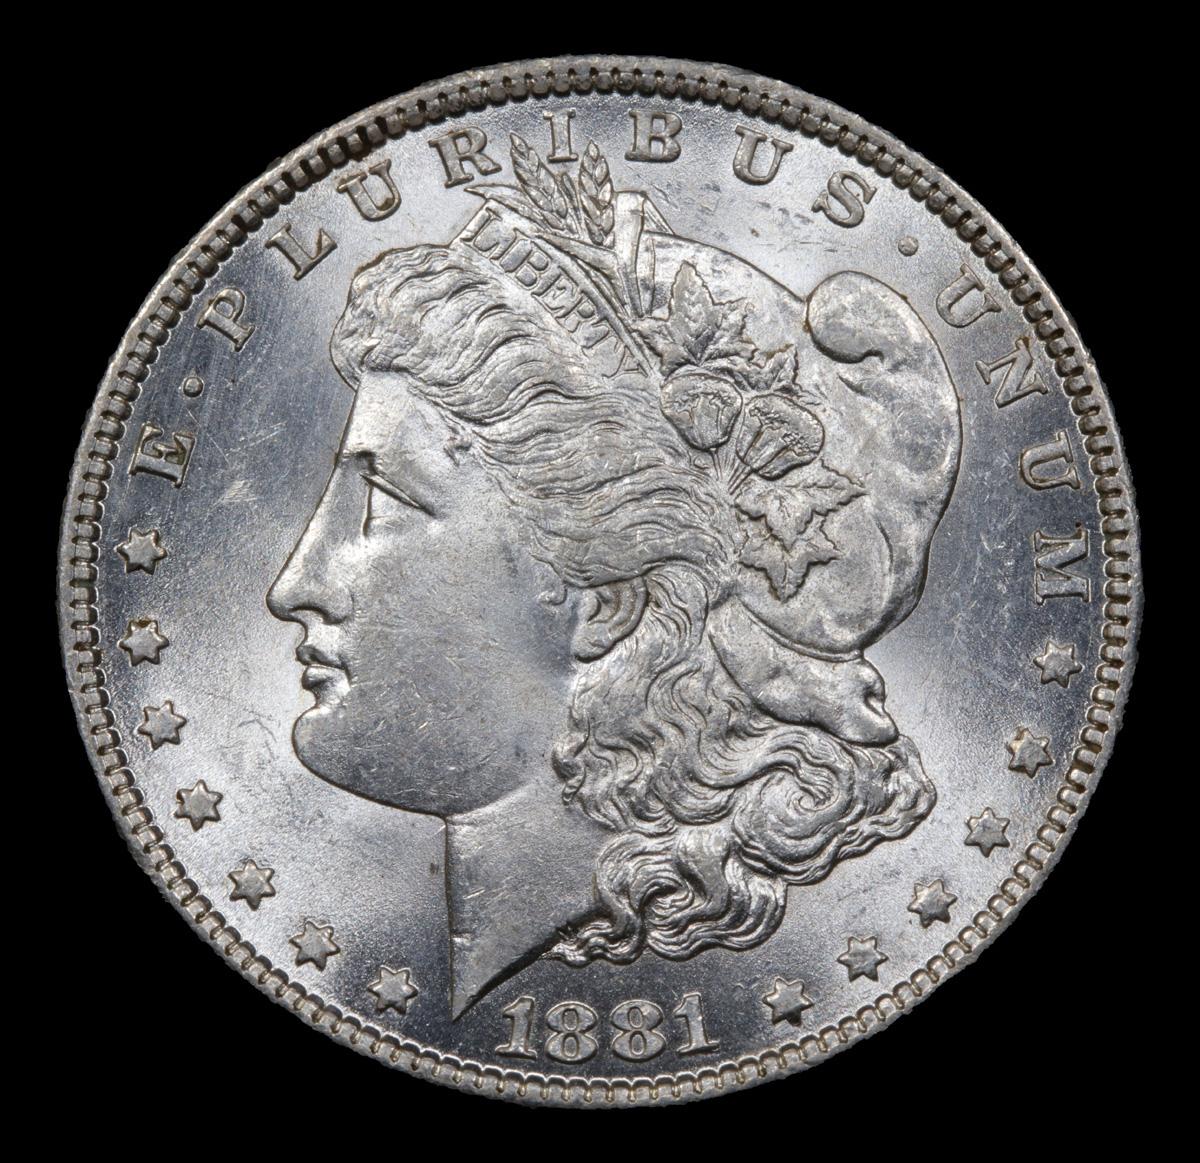 1881-o Morgan Dollar $1 Grades Unc Details